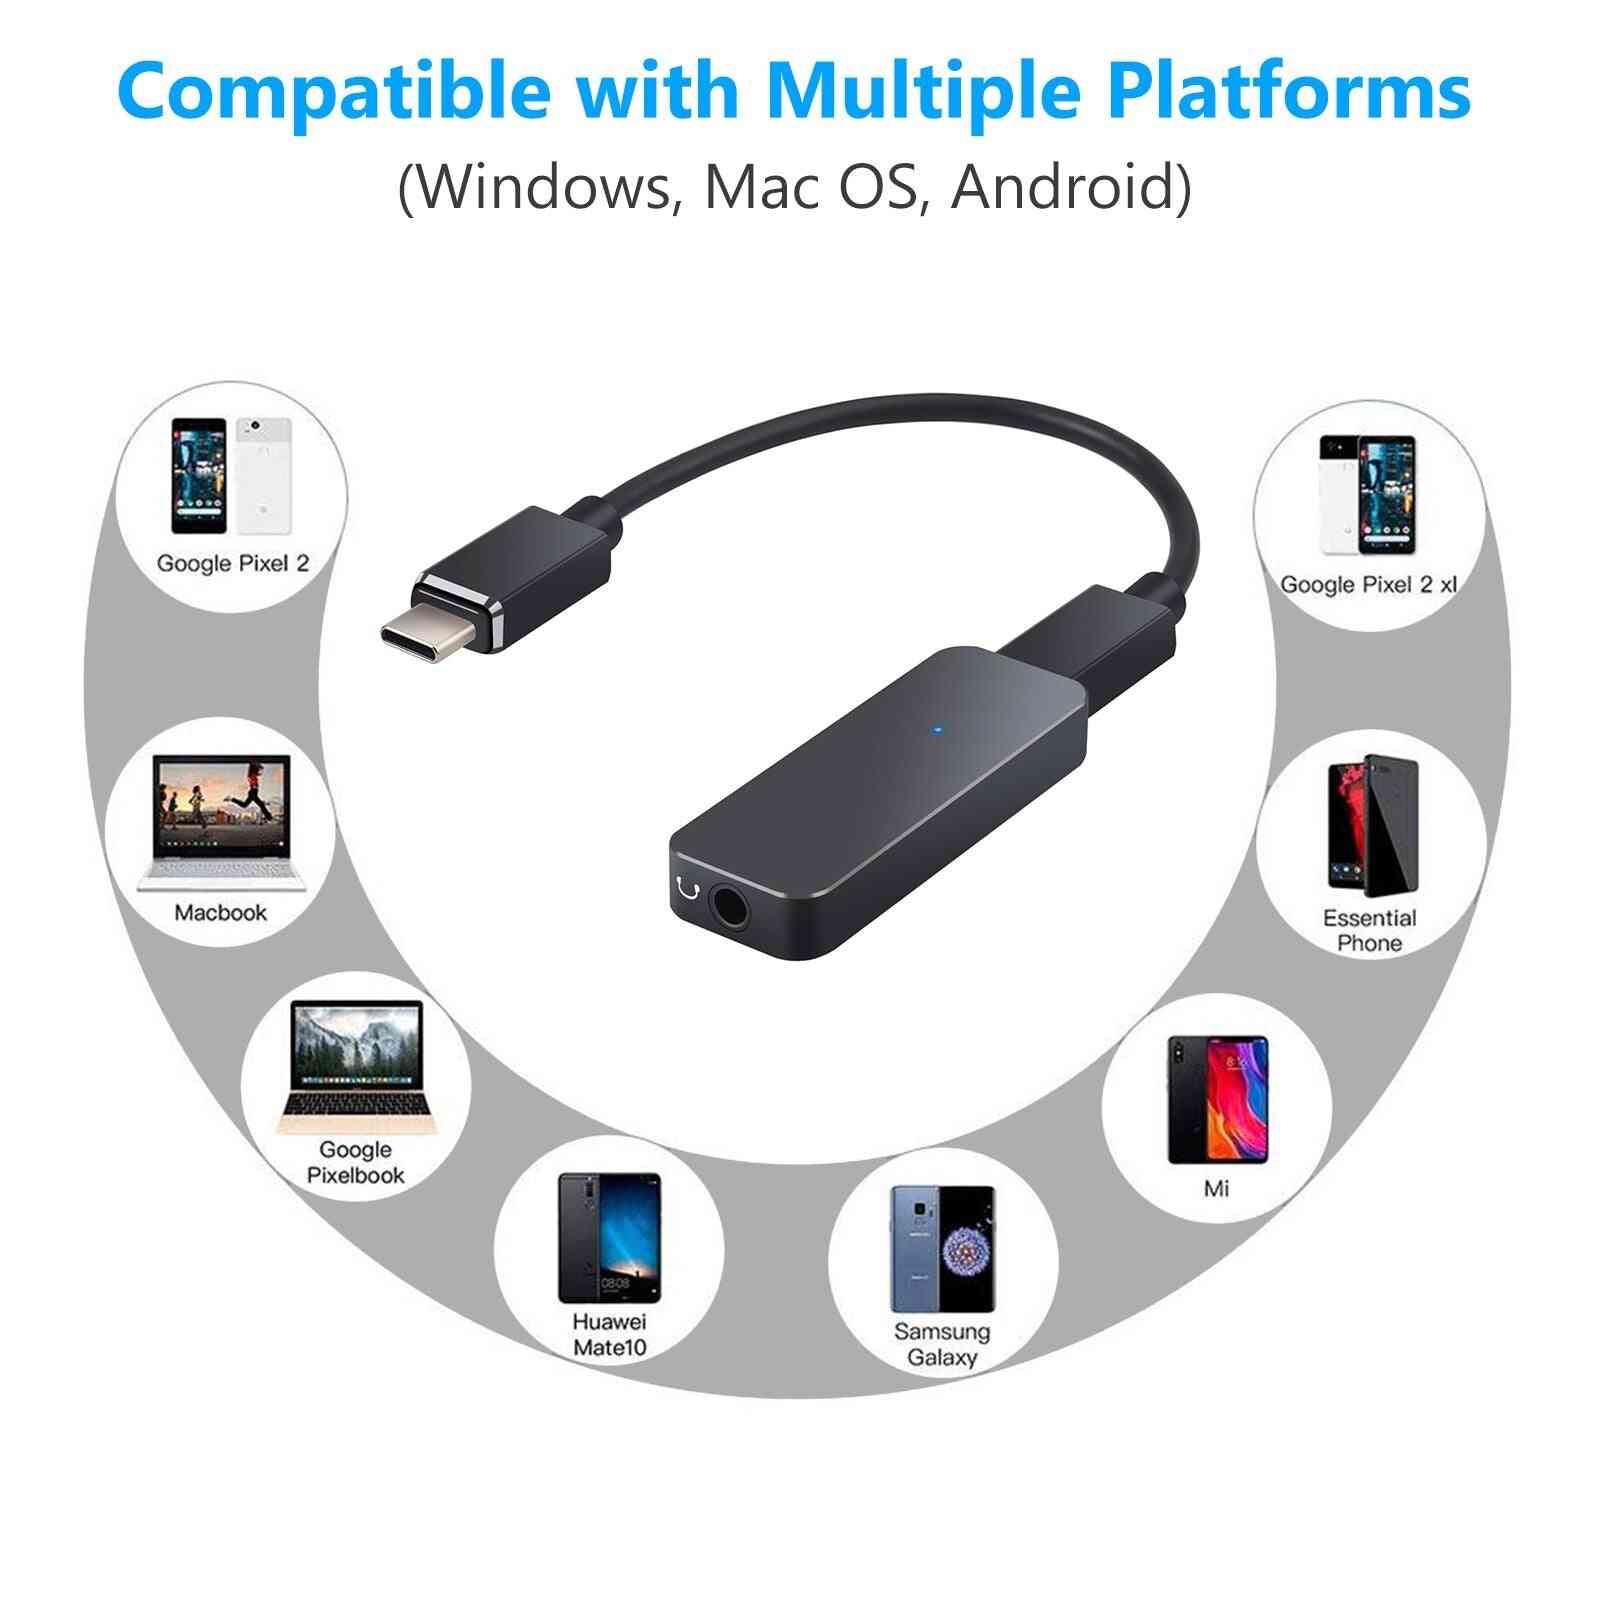 Konwerter USB C 192 kHz na 3,5 mm Dac Przenośny adapter do wzmacniacza słuchawkowego do iPhone'a z systemem Android - czarny